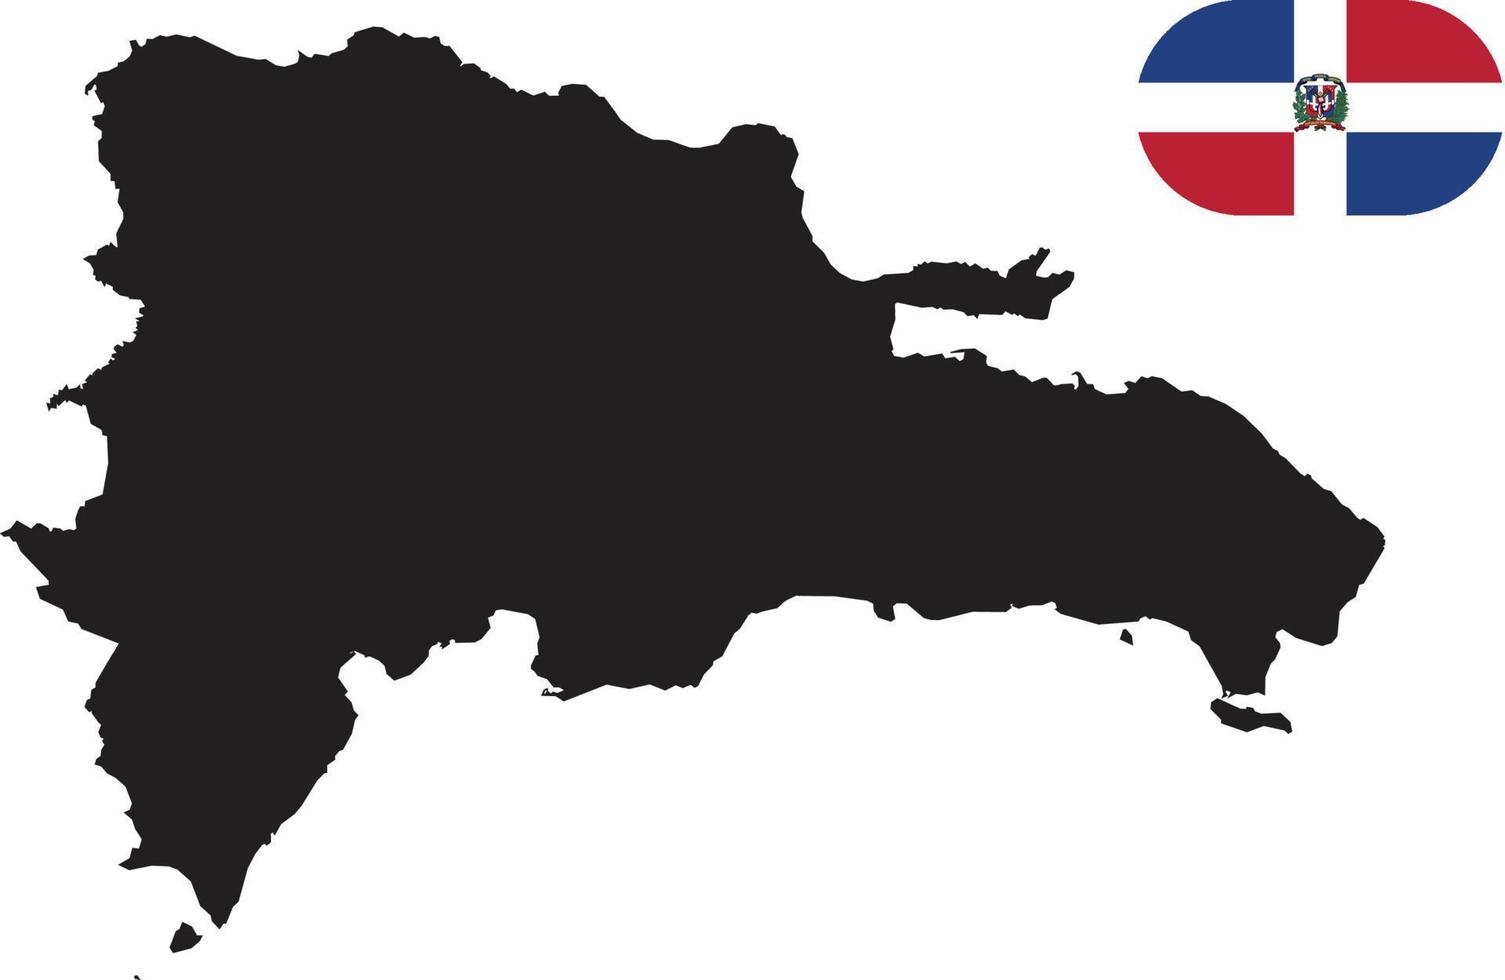 mapa y bandera de republica dominicana vector